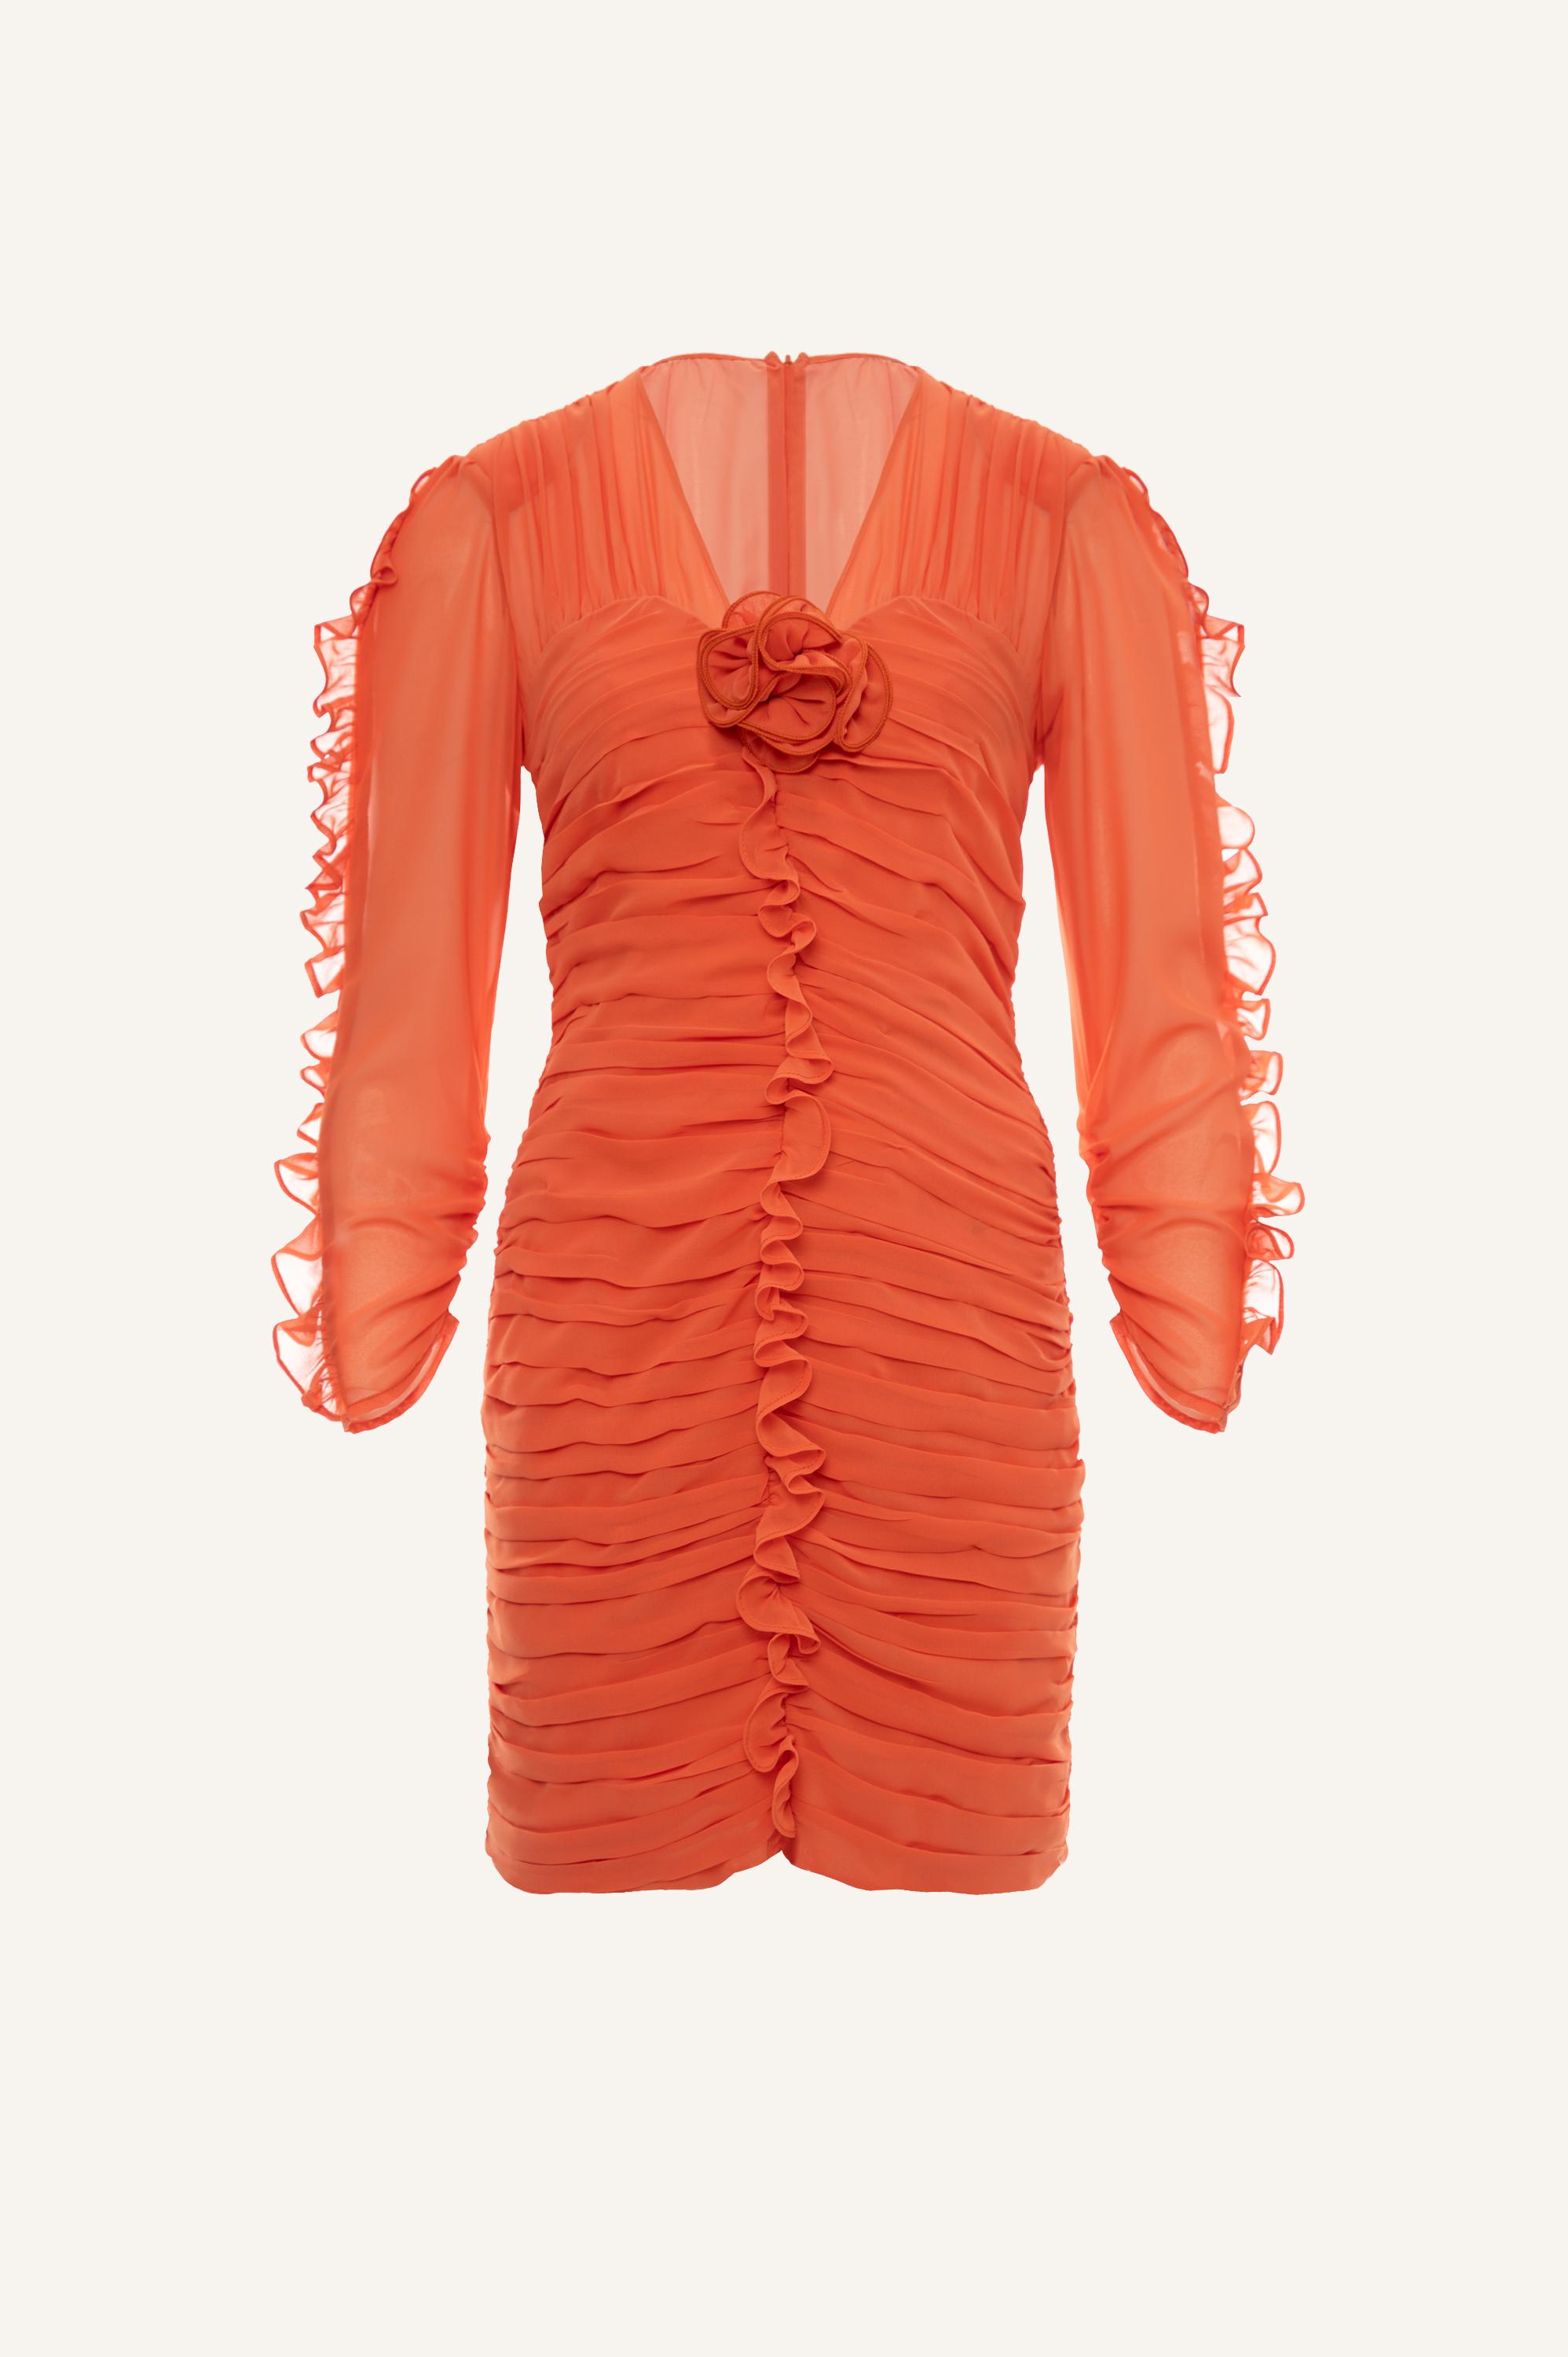 φορεμα για νησι φορεμα για γαμο κοντο καλοκαιρινο φορεμα κοντο φορεμα Πορτοκαλί μίνι φόρεμα Κοντό πορτοκαλί φόρεμα Πορτοκαλί φόρεμα Γυναικείο μίνι φόρεμα για βραδινές εξόδους Καλοκαιρινό πορτοκαλί φόρεμα Μίνι χρώμα Πορτοκαλί φόρεμα με λεπτομέρειες Εμπριμέ μίνι φόρεμα σε πορτοκαλί χρώμα Κομψό φόρεμα φορεμα σε στενη γραμμη κολλητο φορεμα φορεμα για βαφτιση σικ φορεμα ανοιξιατικα φορεματα ανοιξιατικα φορεματα 2024 φορεματα καλοκαιρινα ρουχα ανοιξιατικα πορτοκαλι φορεμα φορεματα με μανικι ruffle dress mini peach dress dress with ruffles ροδακινι φορεμα φορεμα με σουρες